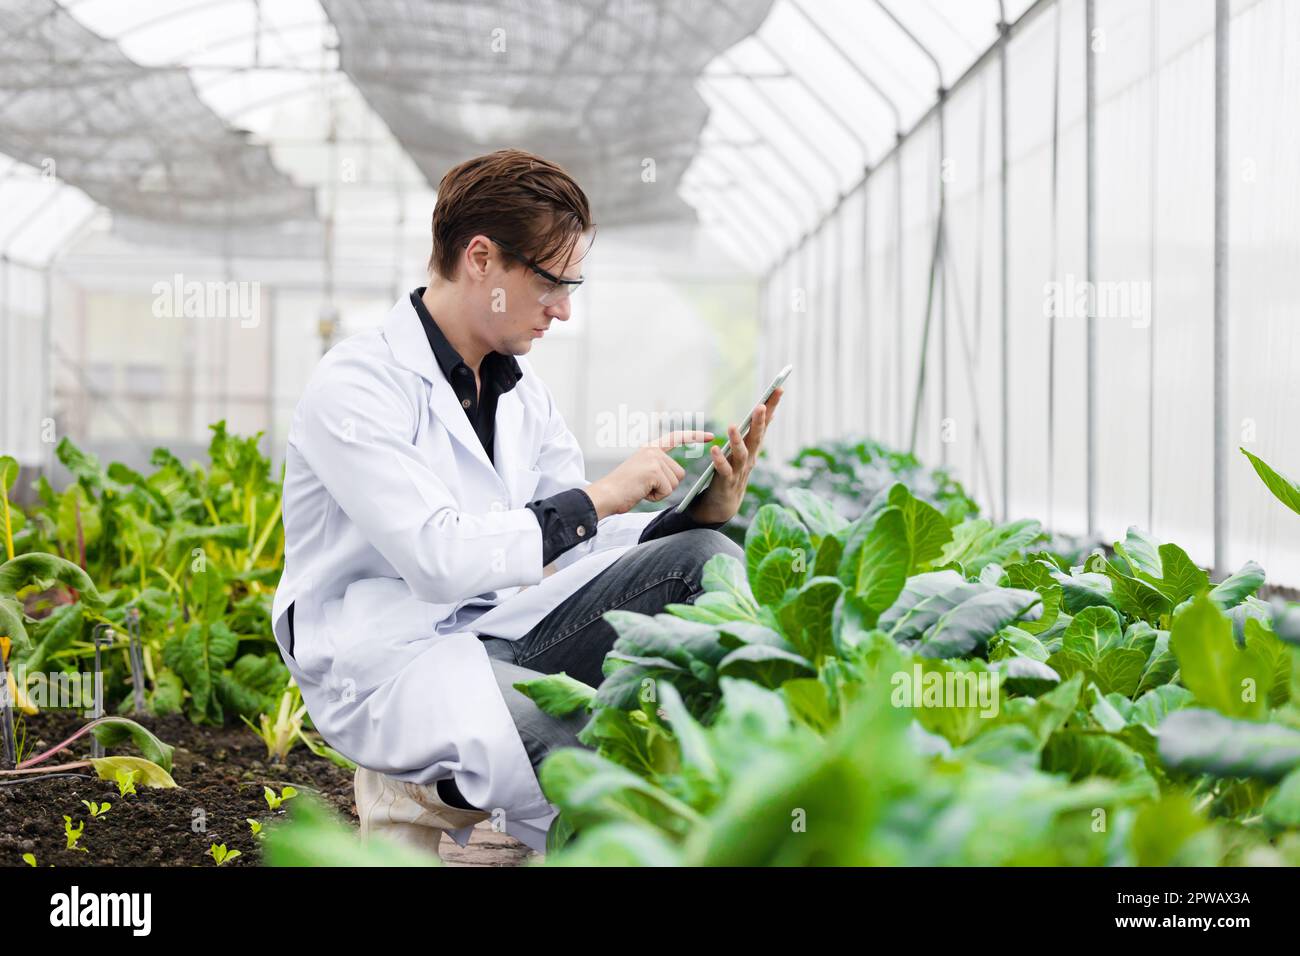 Un scientifique de l'agriculture travaille à la recherche de plantes dans un laboratoire de bio-ferme. Étude biologiste de collecte de données avec ordinateur portable. Banque D'Images